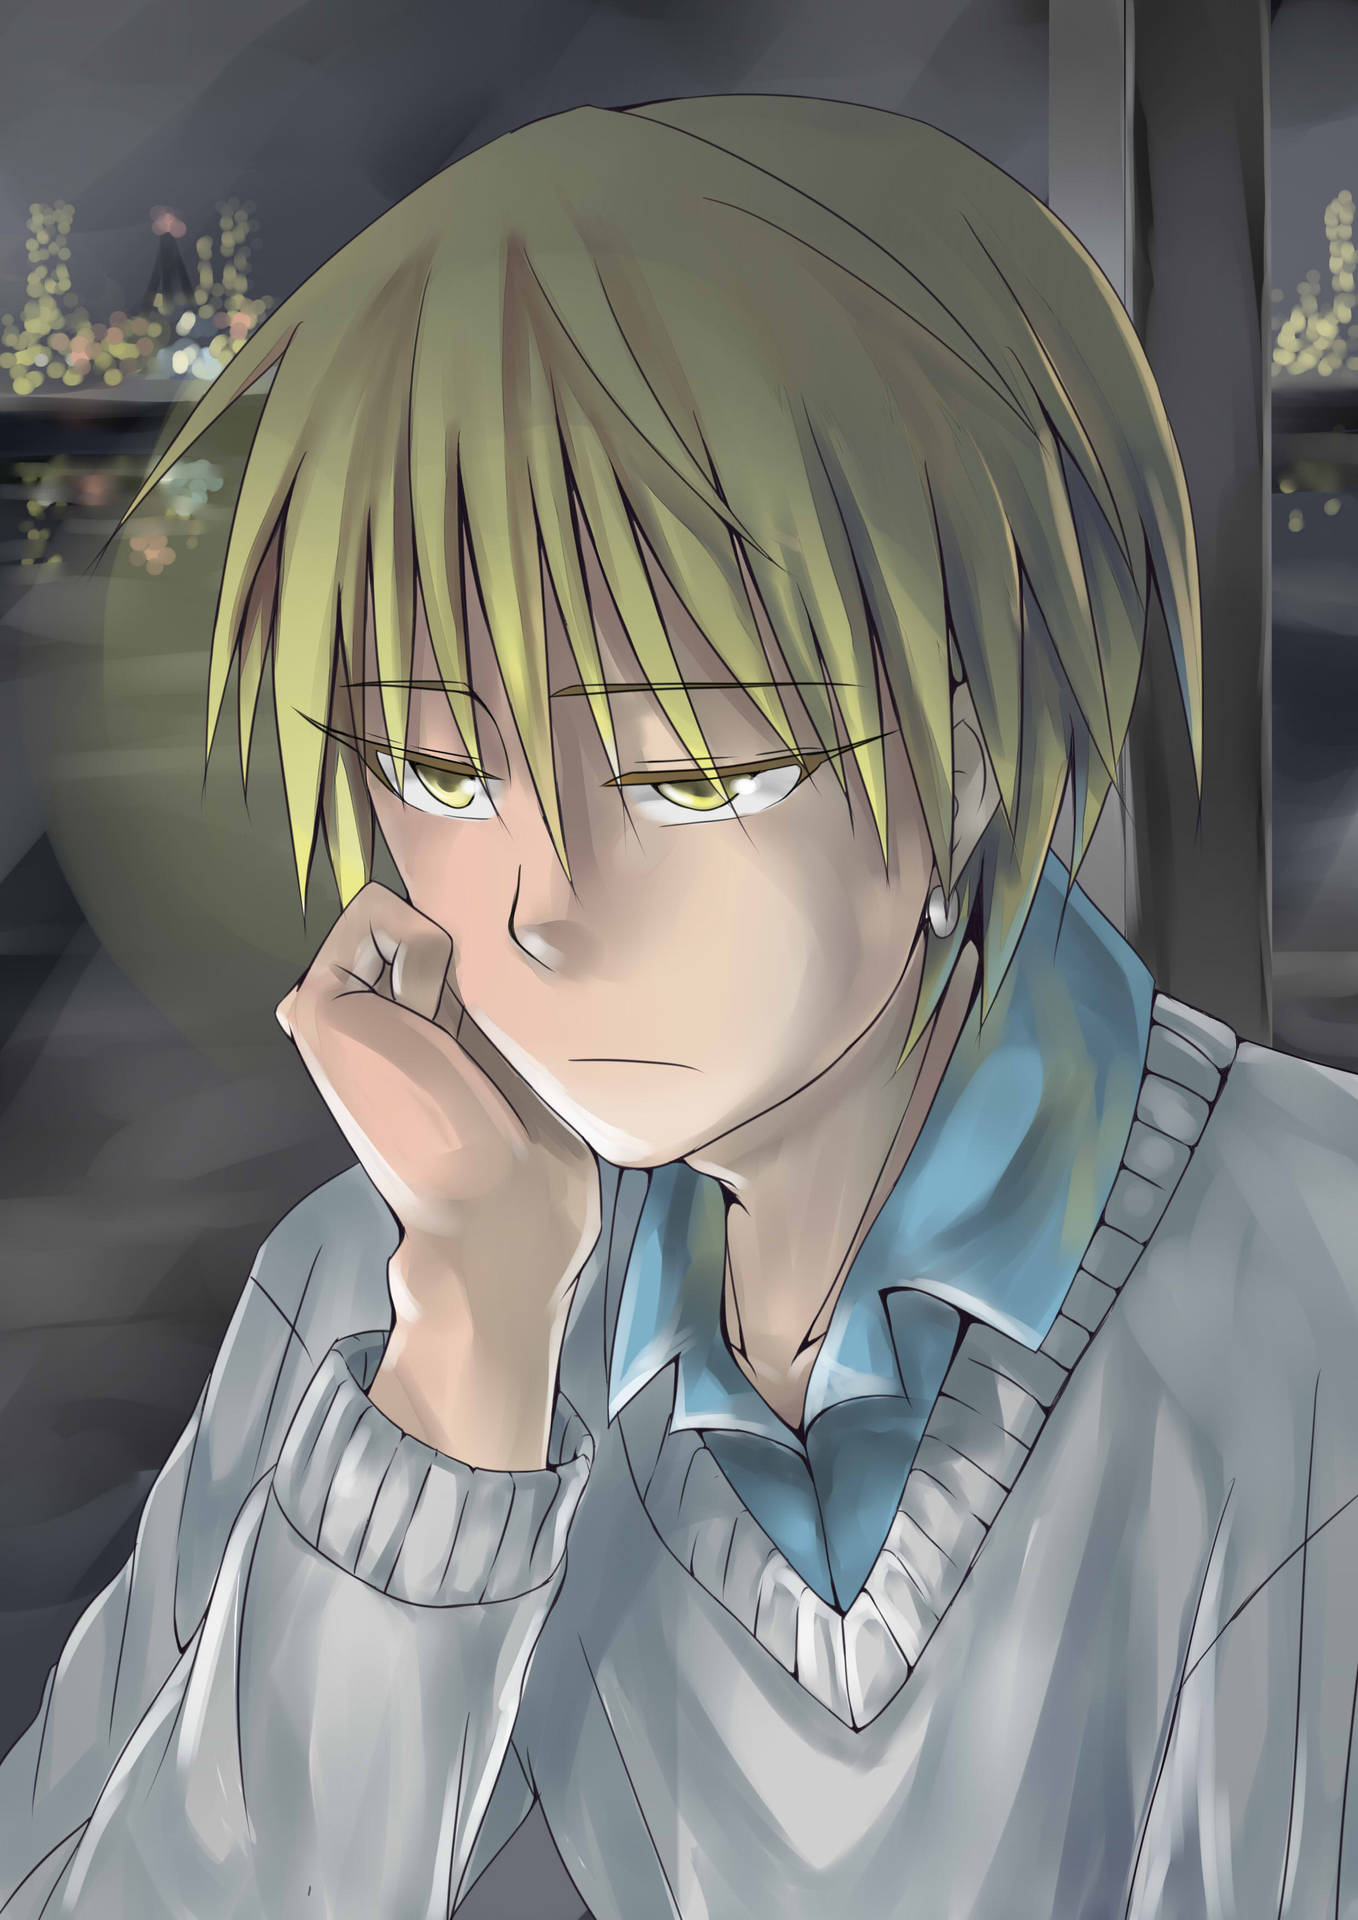 Sad Anime Boy Kise Ryota